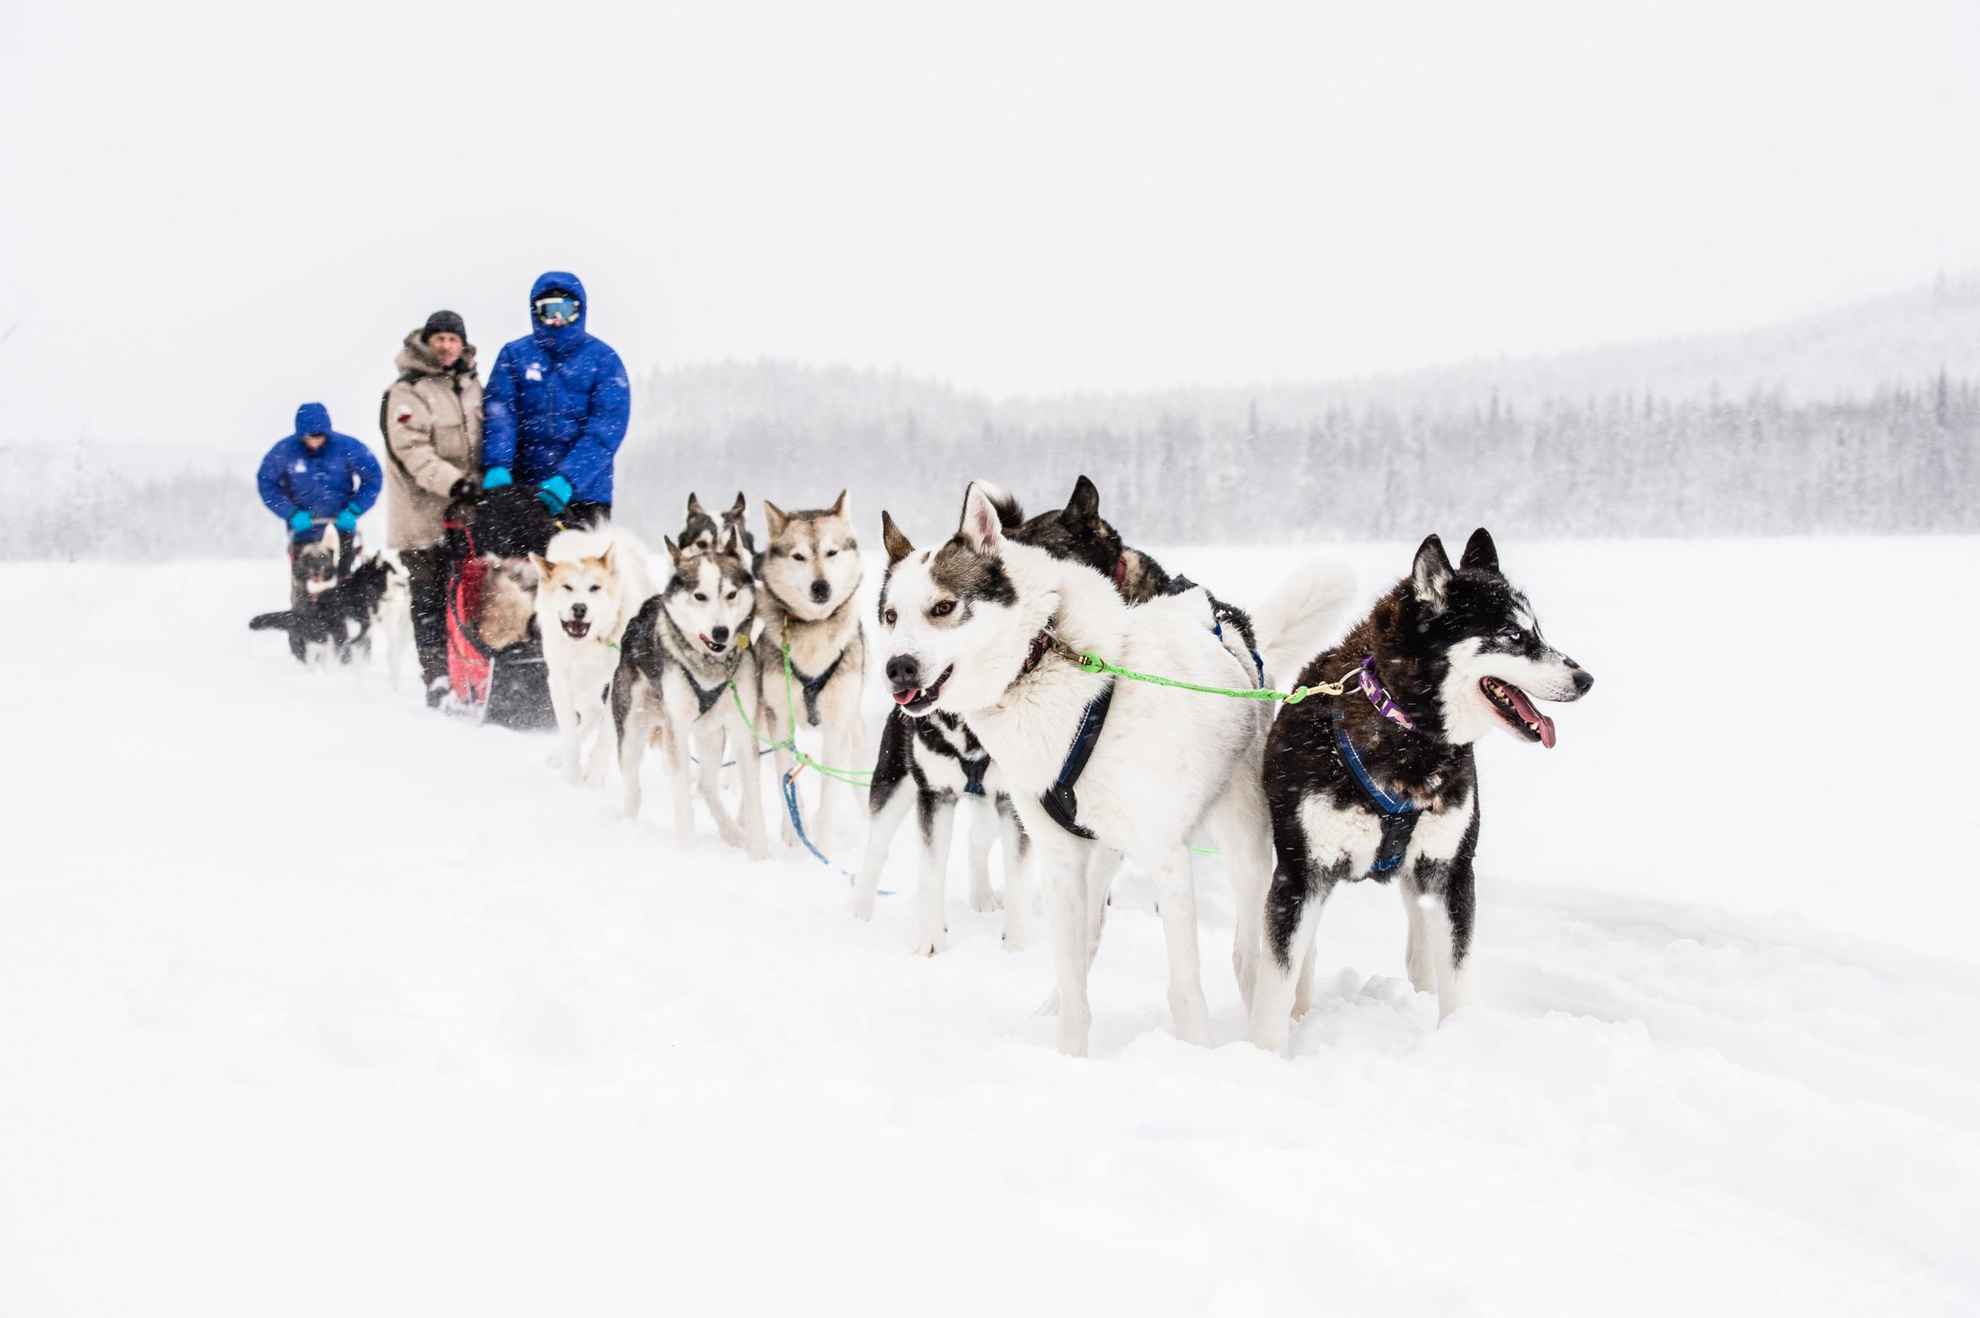 Een hondenslee met meerdere honden en twee personen op de slee, in een besneeuwd landschap.